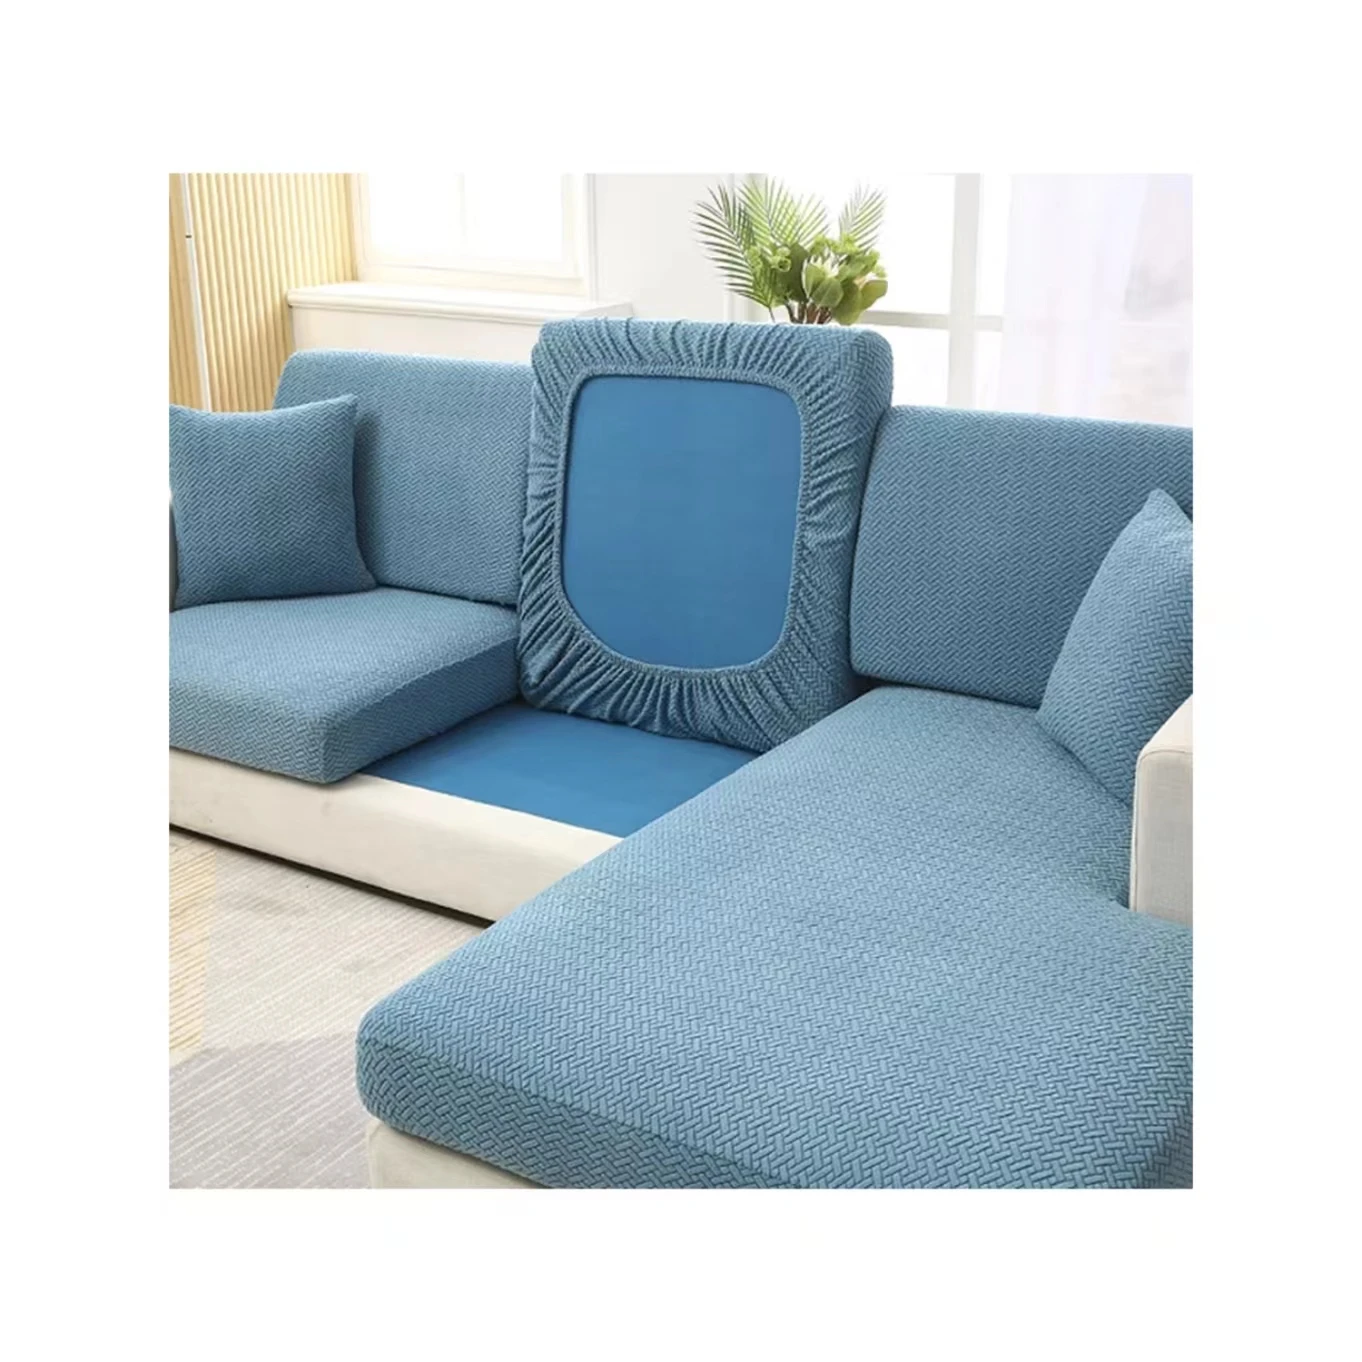 Высококачественный жаккардовый чехол для диванной подушки, эластичный чехол для дивана, прочный протектор мебели для всех сезонов (1600627108907)